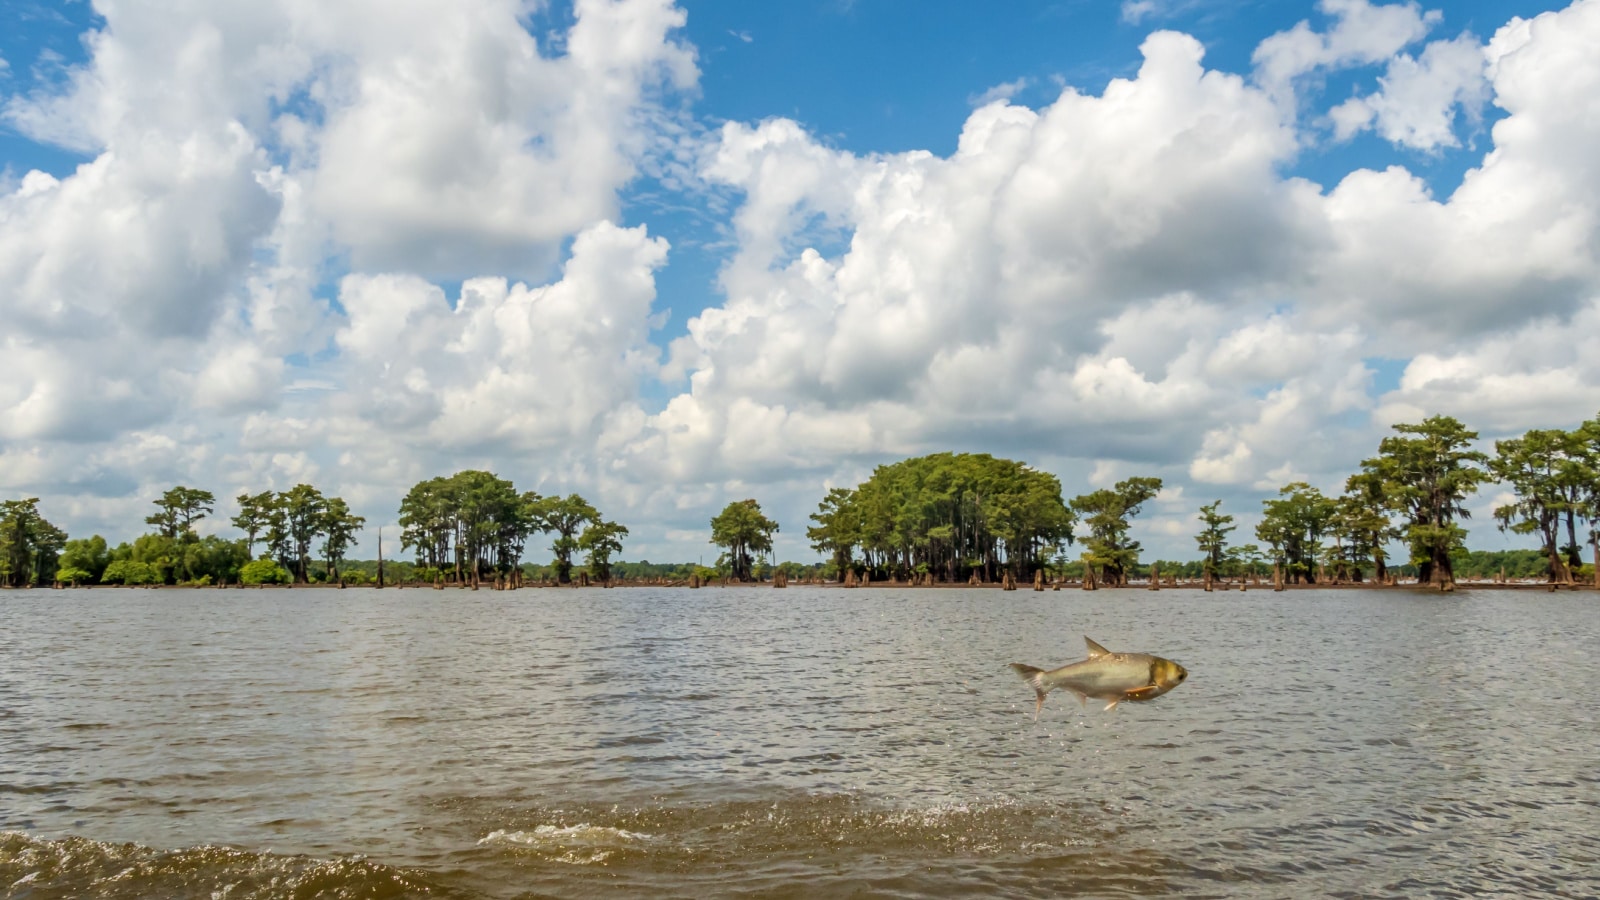 Louisiana: Atchafalaya National Wildlife Refuge